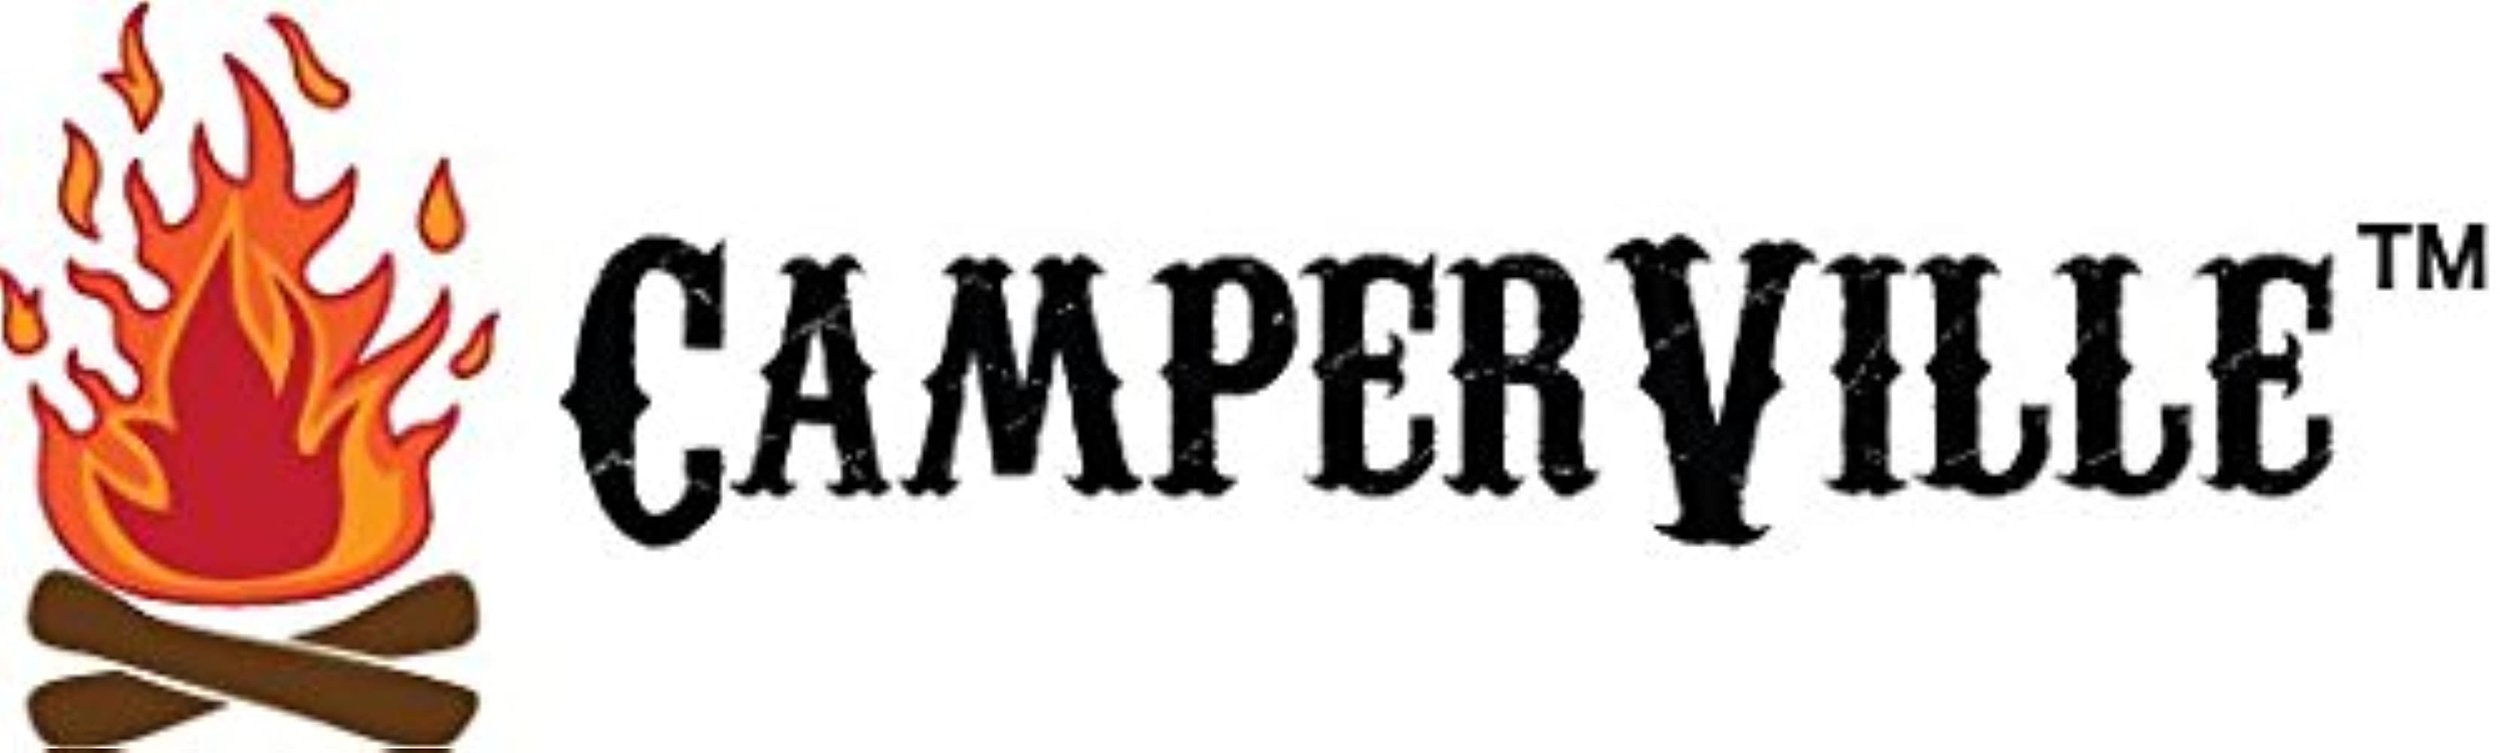 camperville logo.jpg